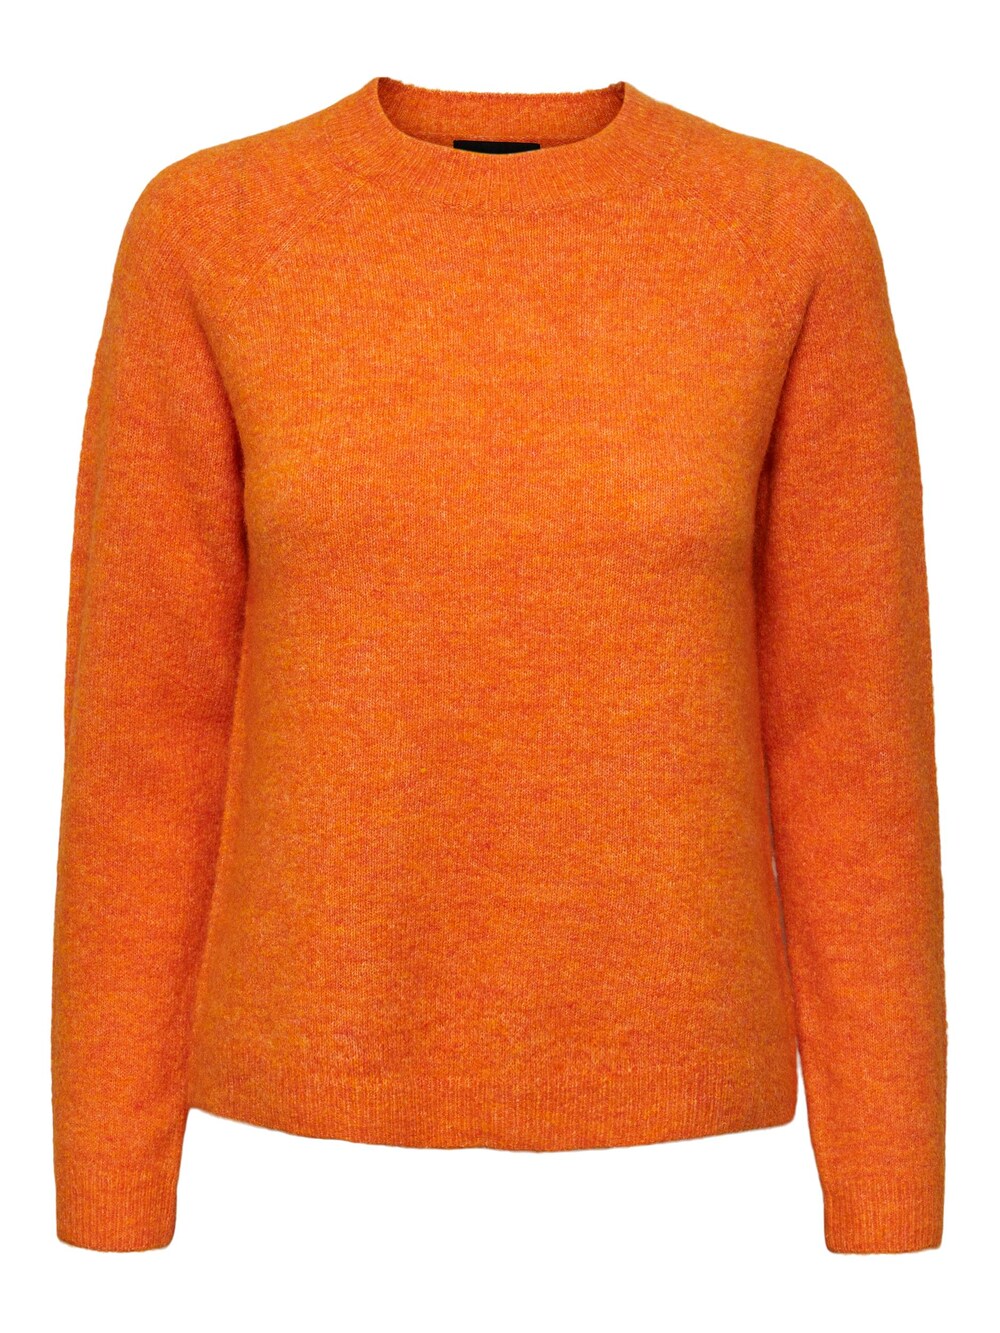 Свитер PIECES Juliana, апельсин свитер pieces juliana пестрый коричневый